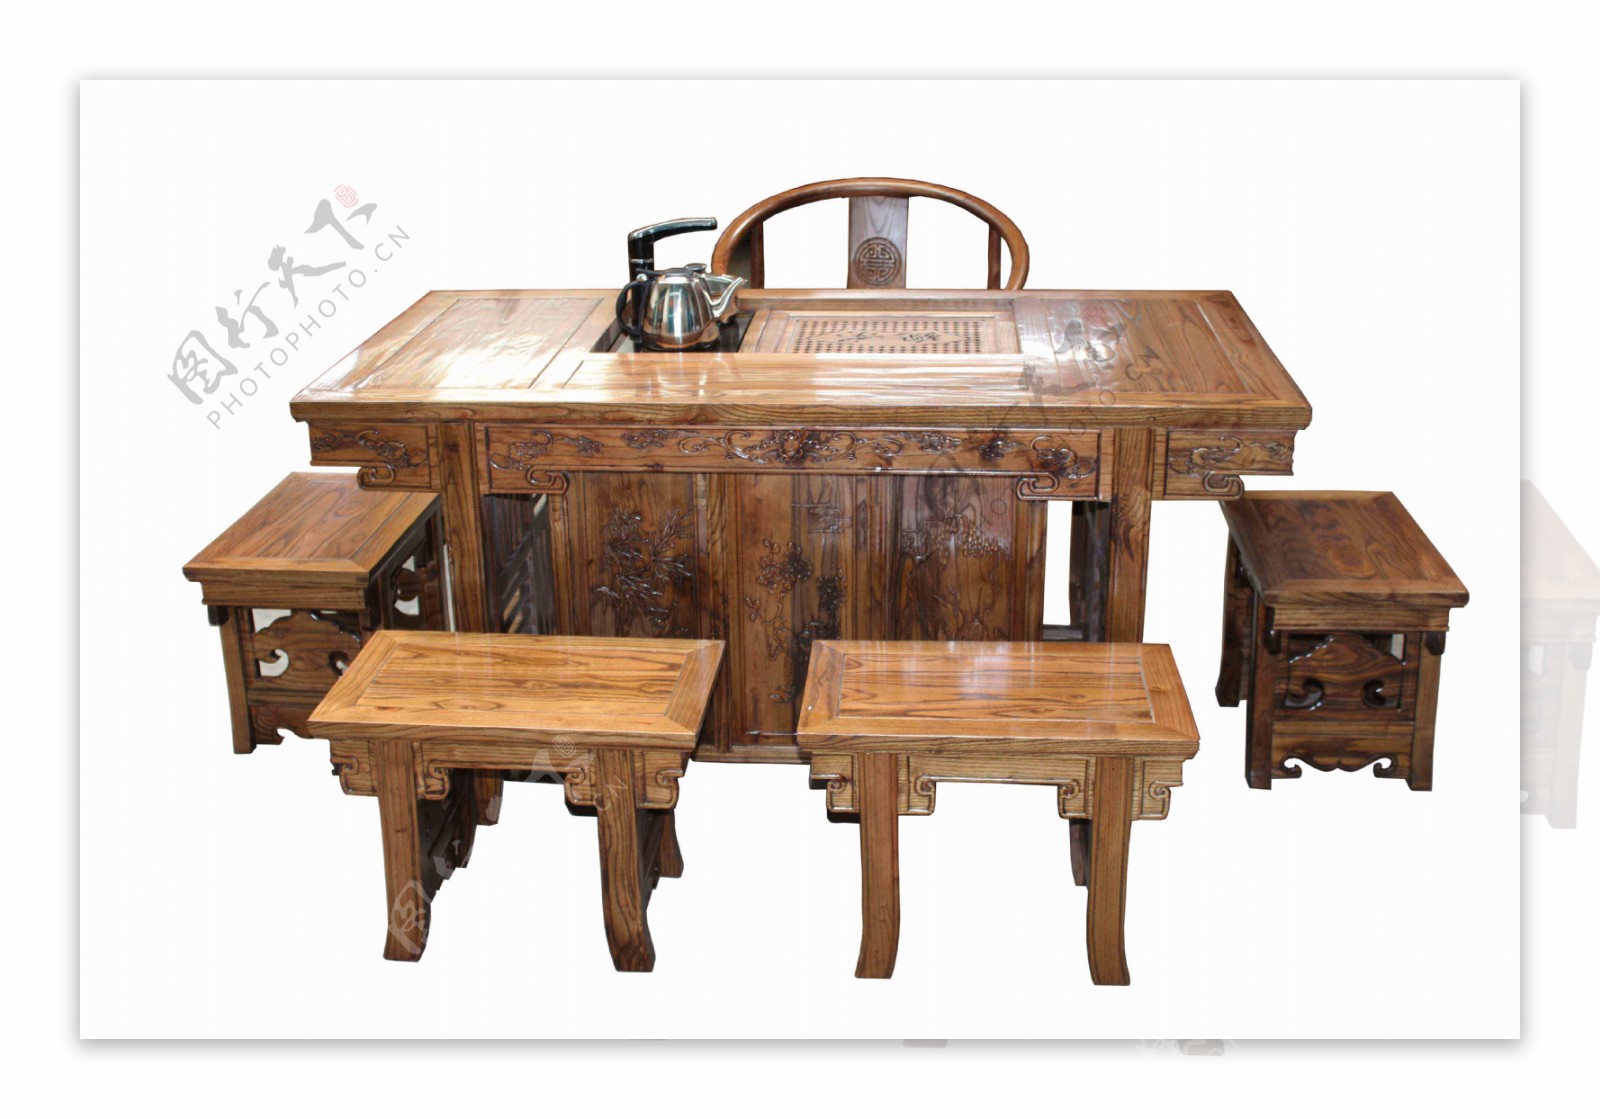 中式桌椅